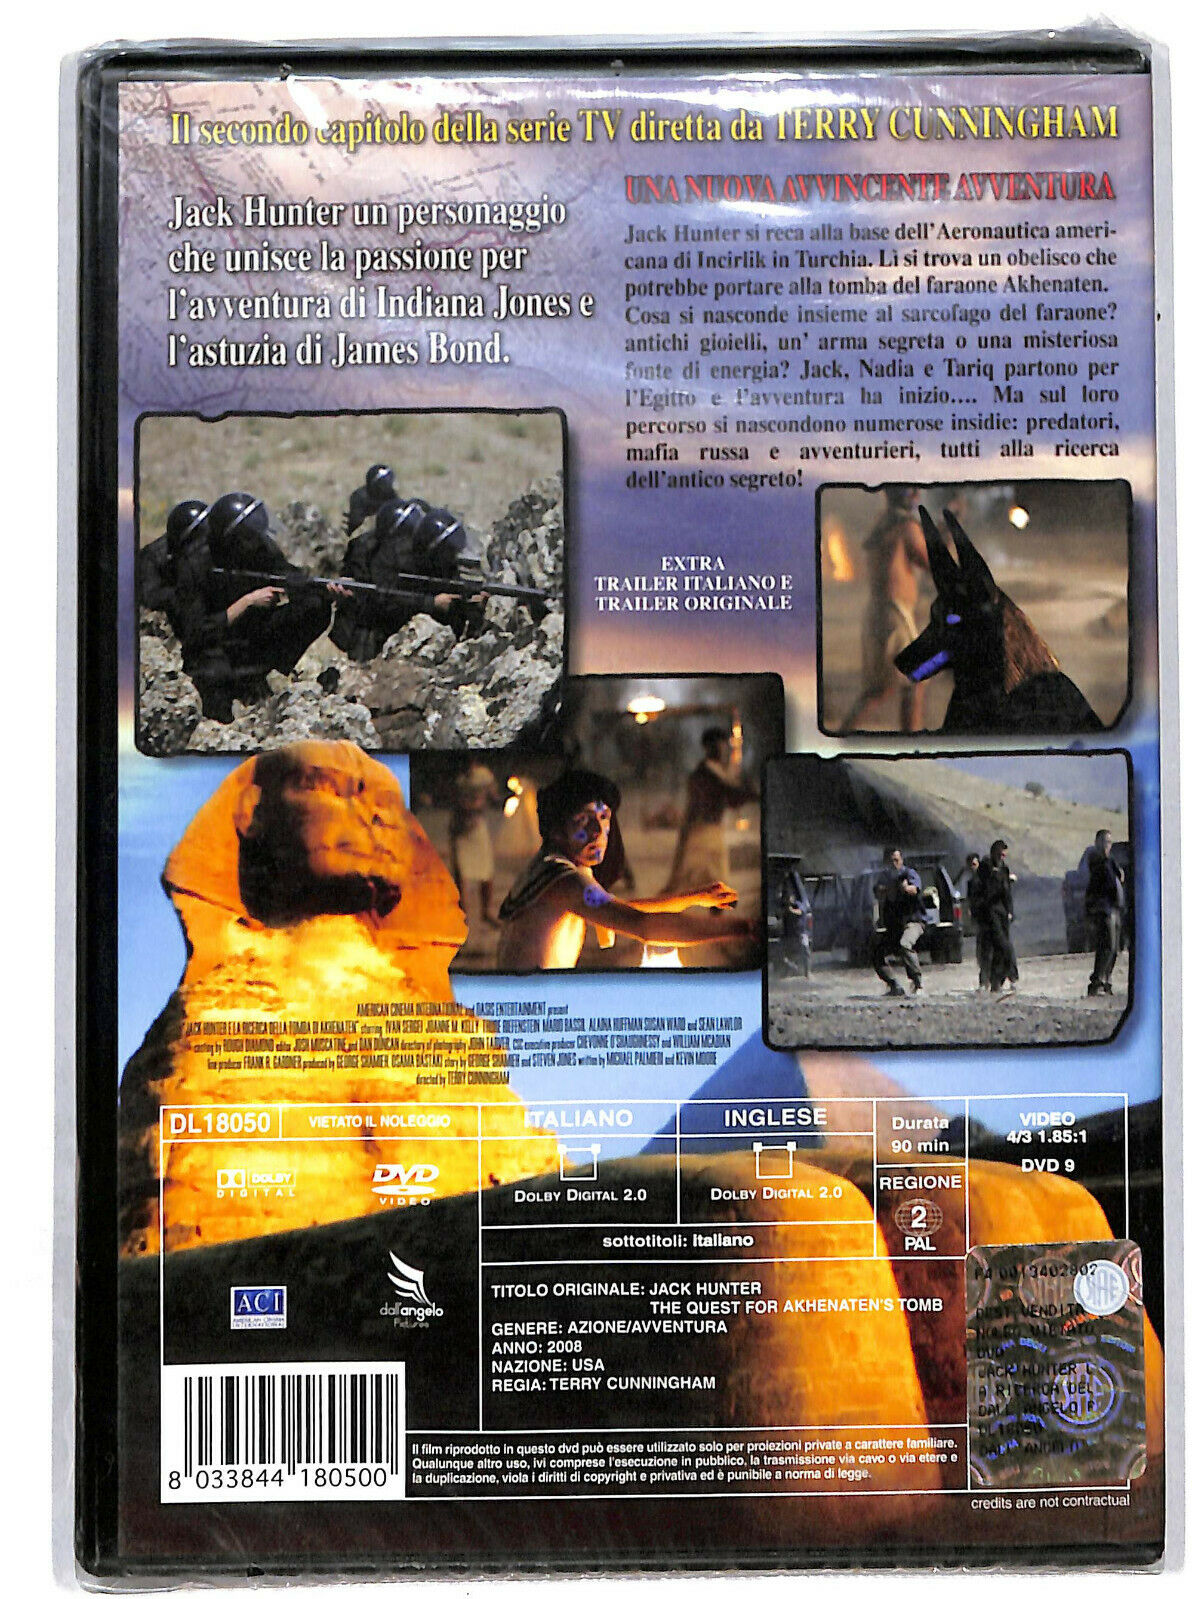 EBOND Jack Hunter e La Ricerca Della Tomba Di Akhenaten  DVD D605938